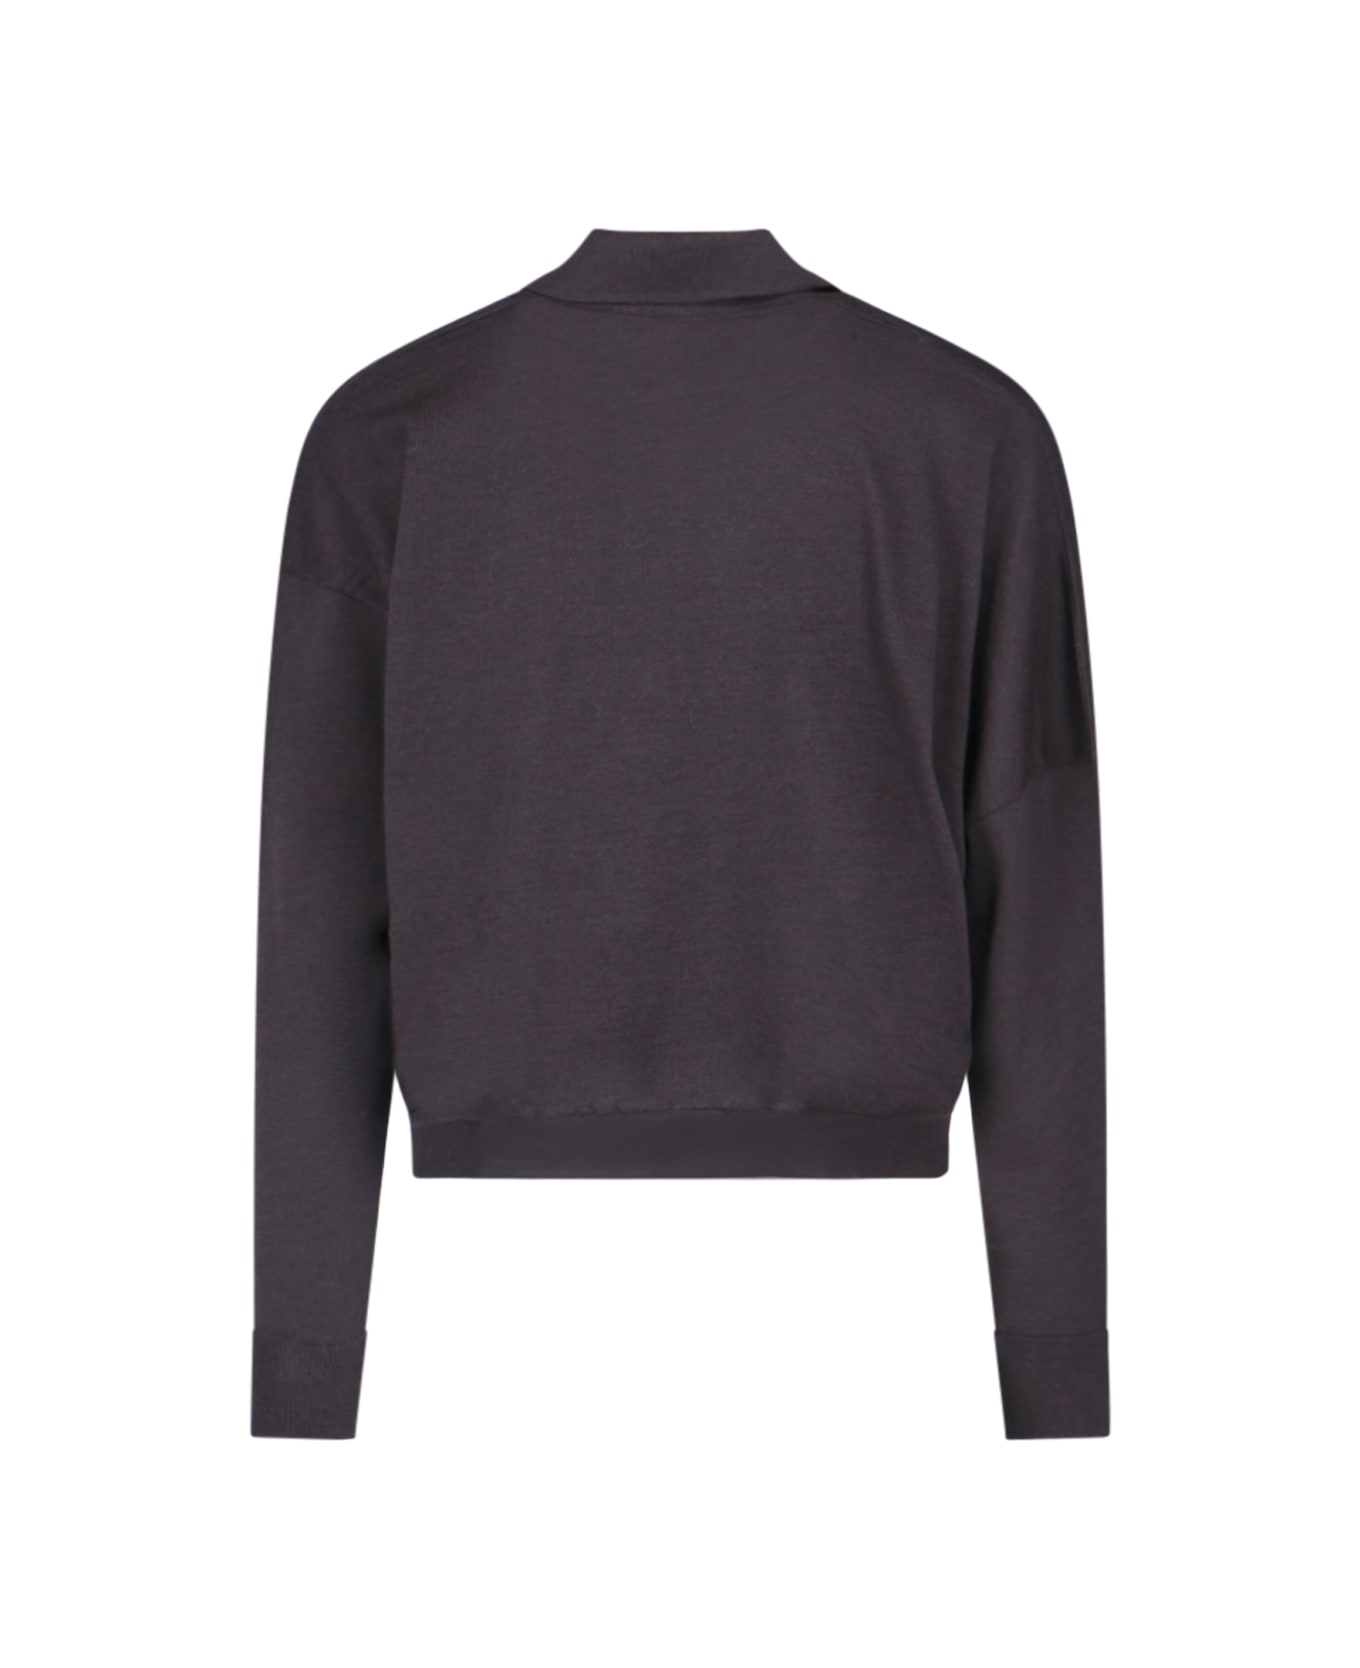 Magliano Polo Sweater - Brown ポロシャツ